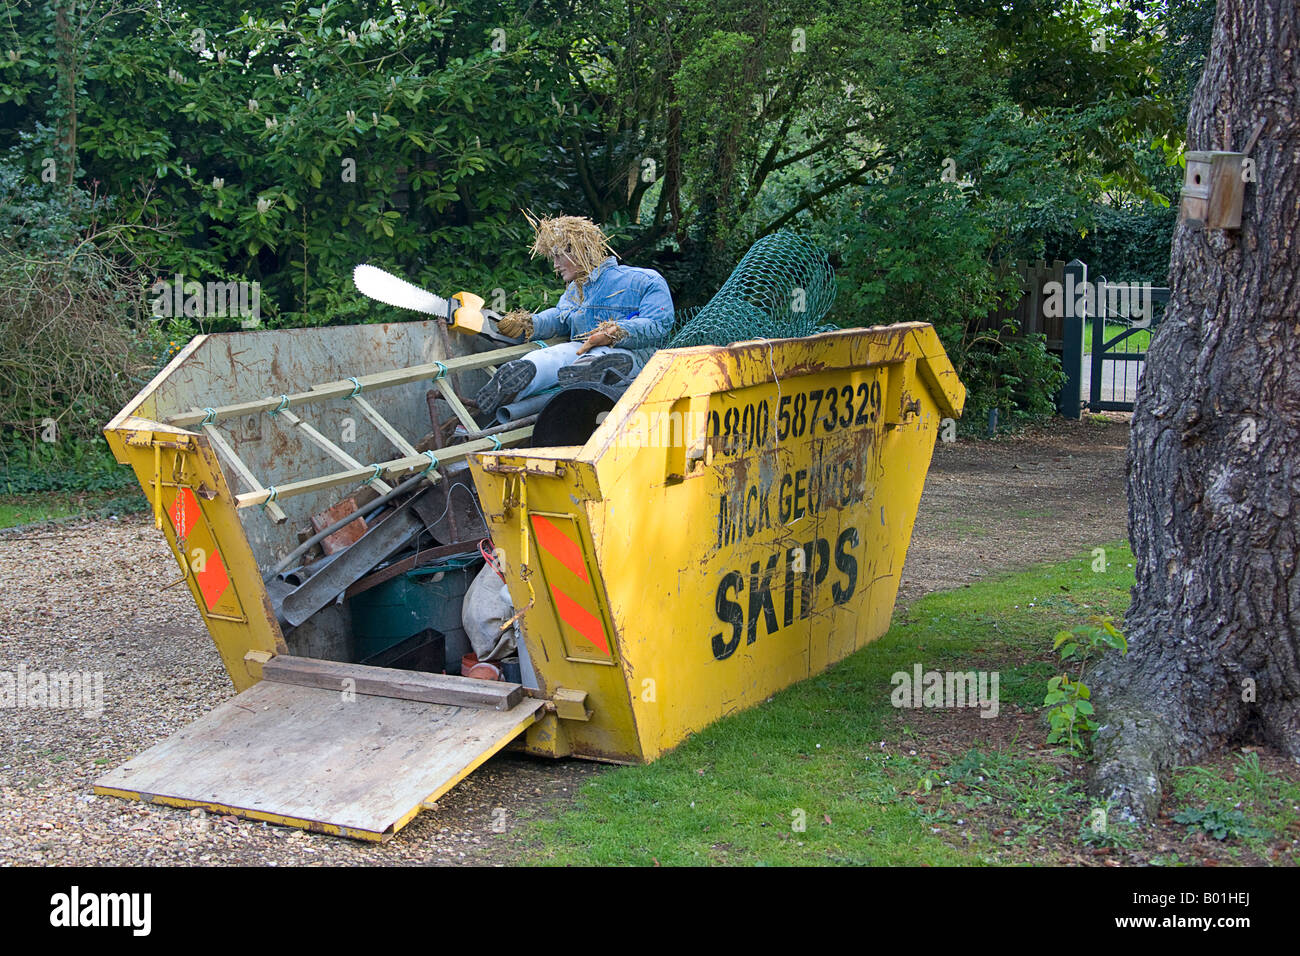 Rubbish skip. Huntingdon. Cambs.UK Stock Photo